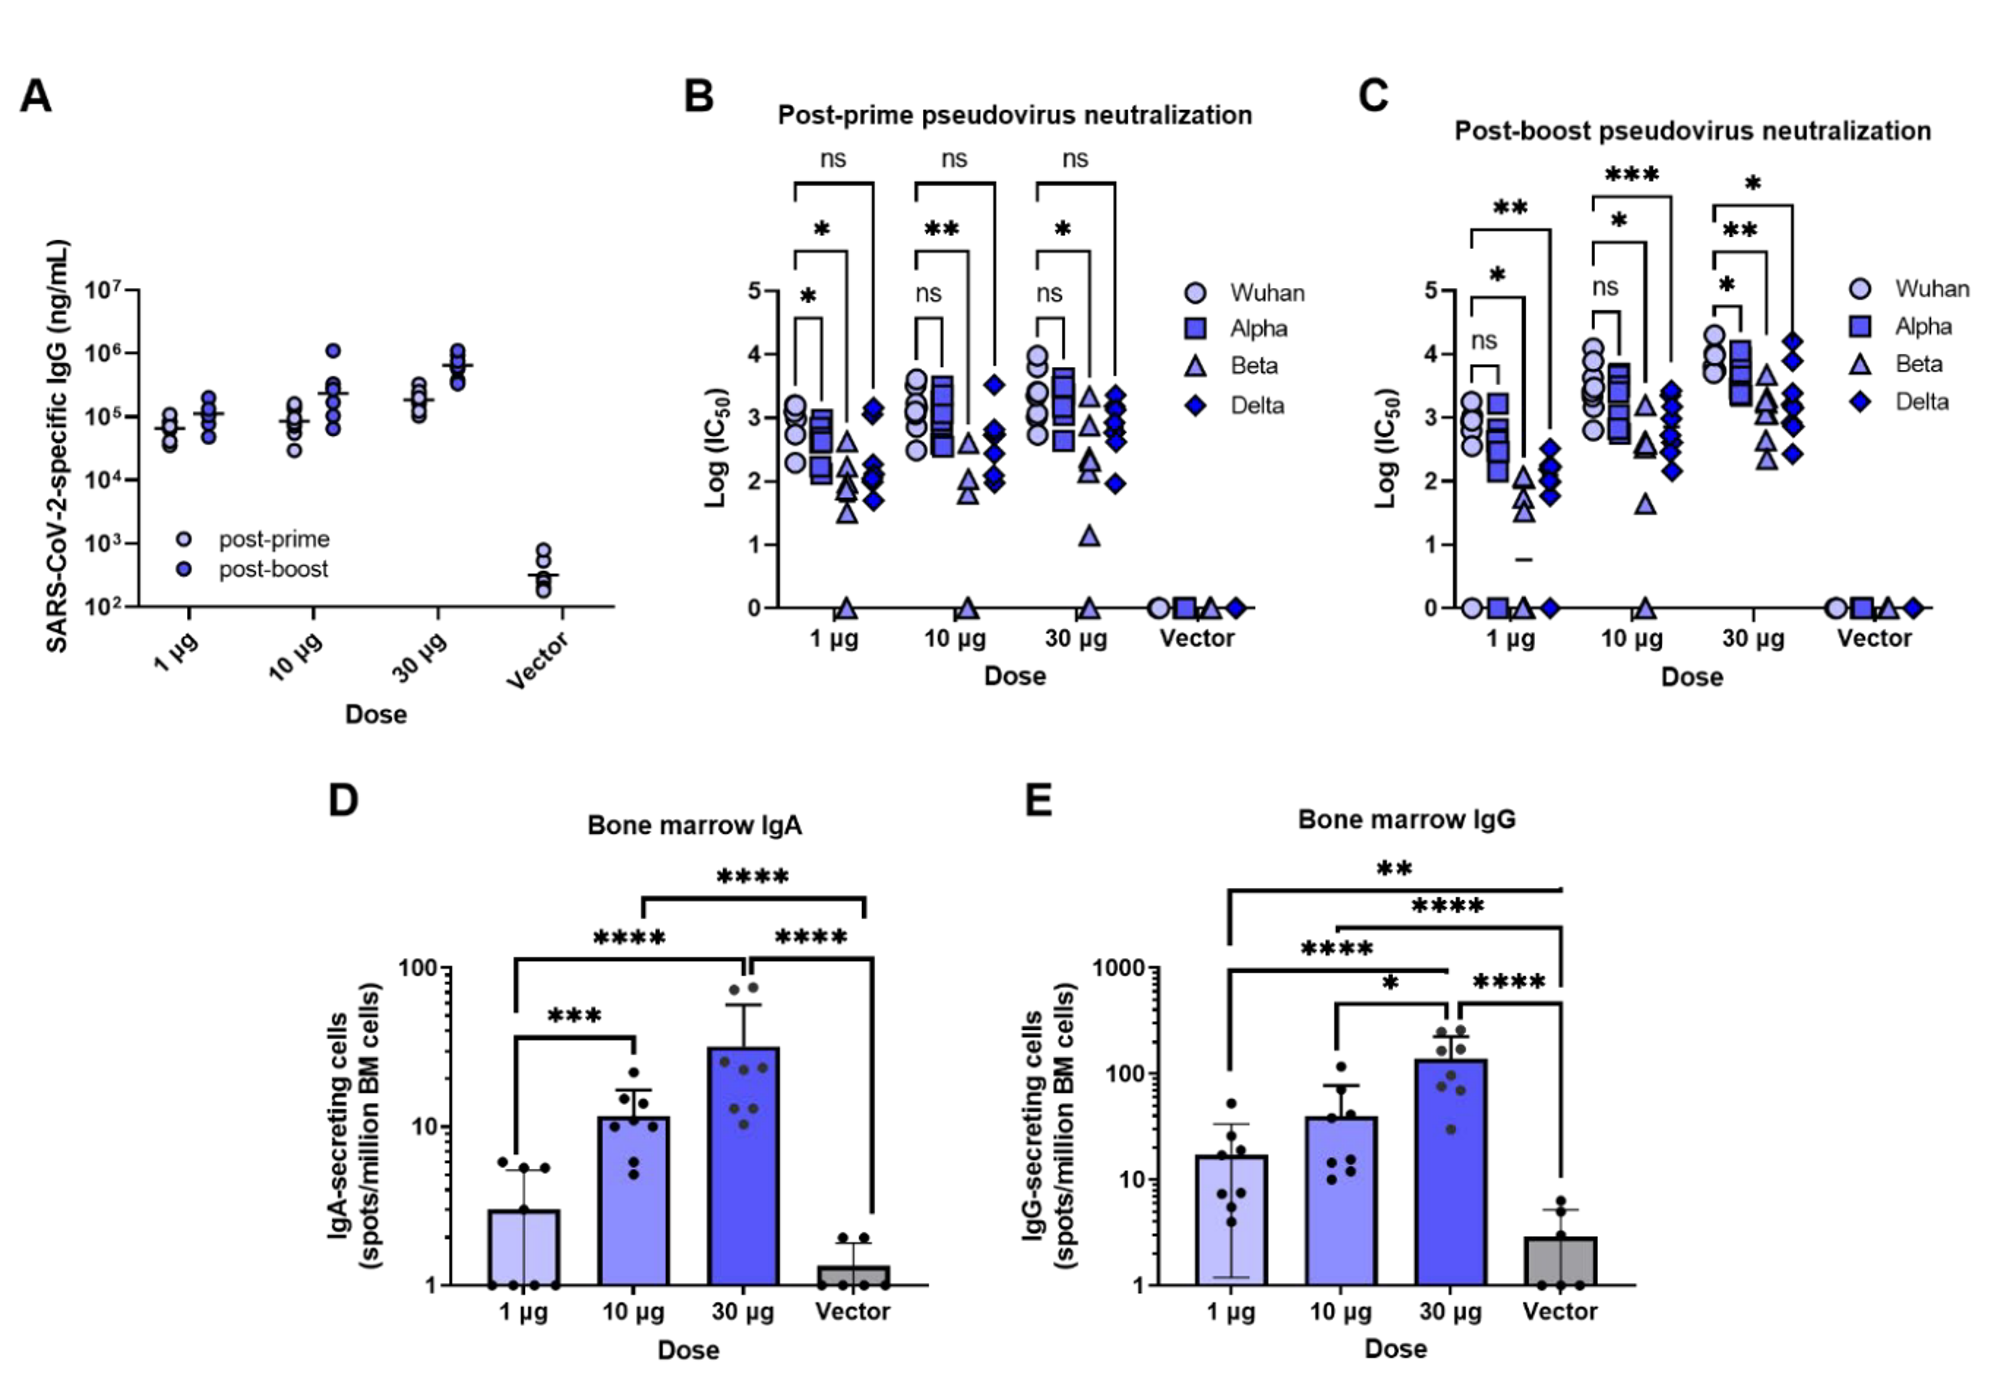 AHHI-SC2免疫小鼠强烈触发血清抗体反应